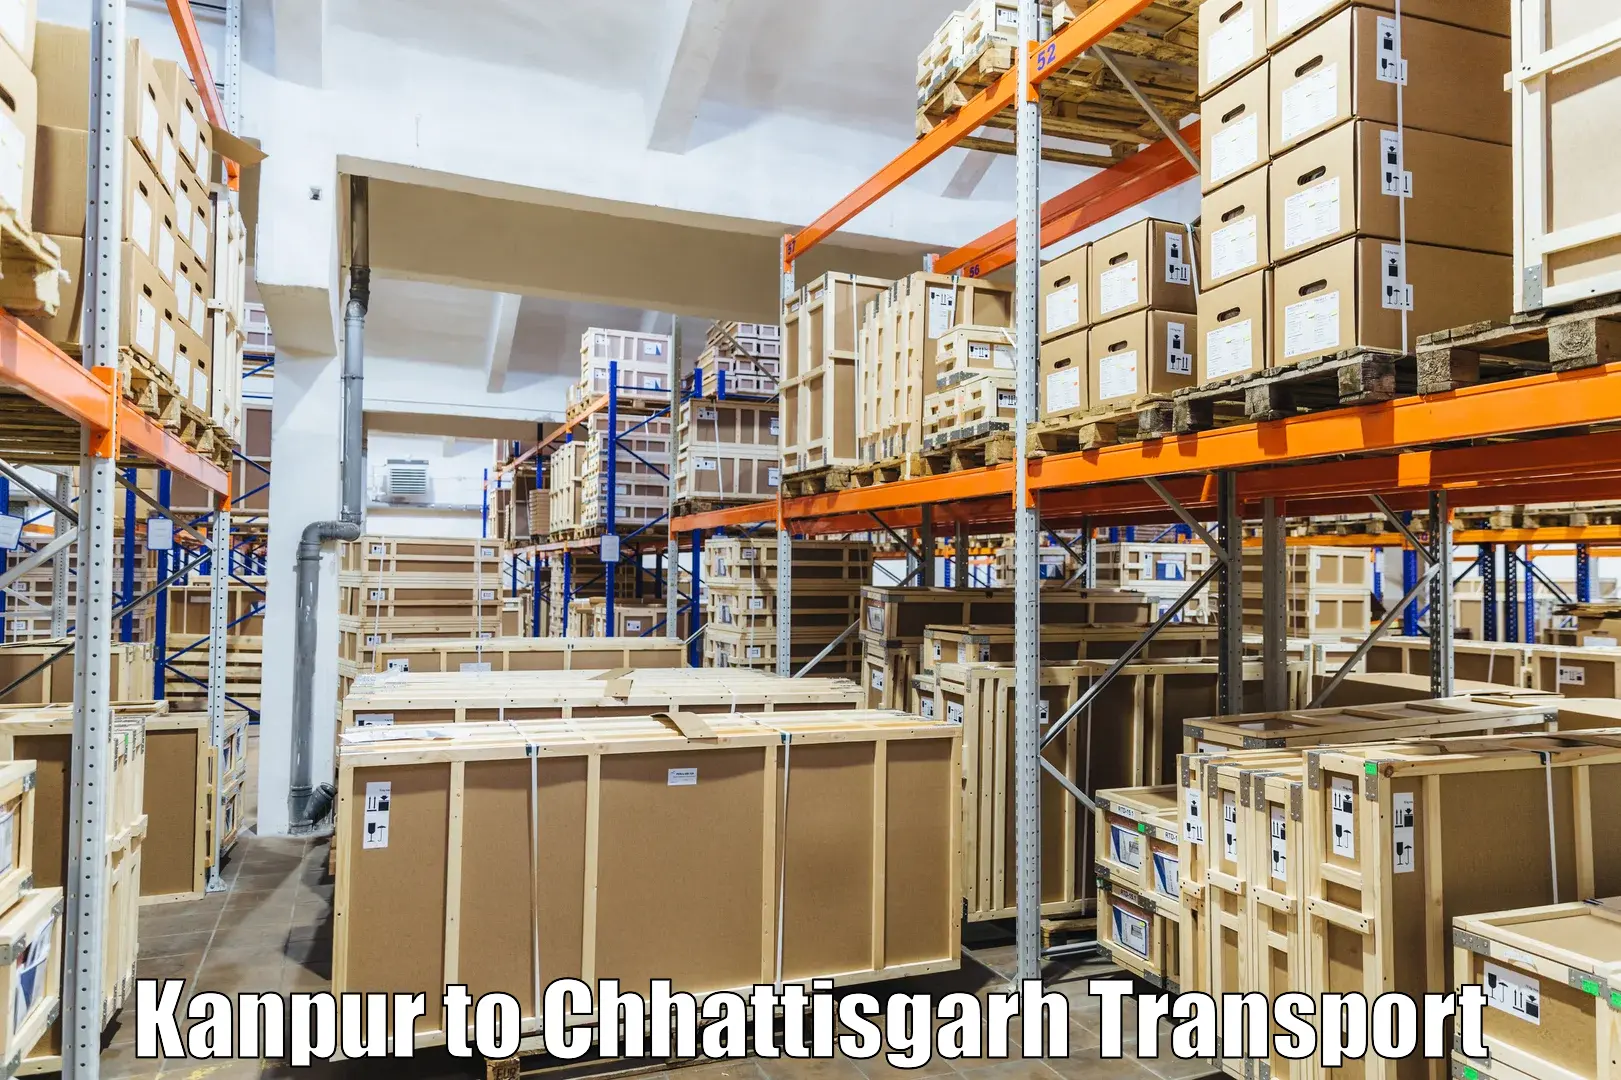 Furniture transport service Kanpur to Kawardha